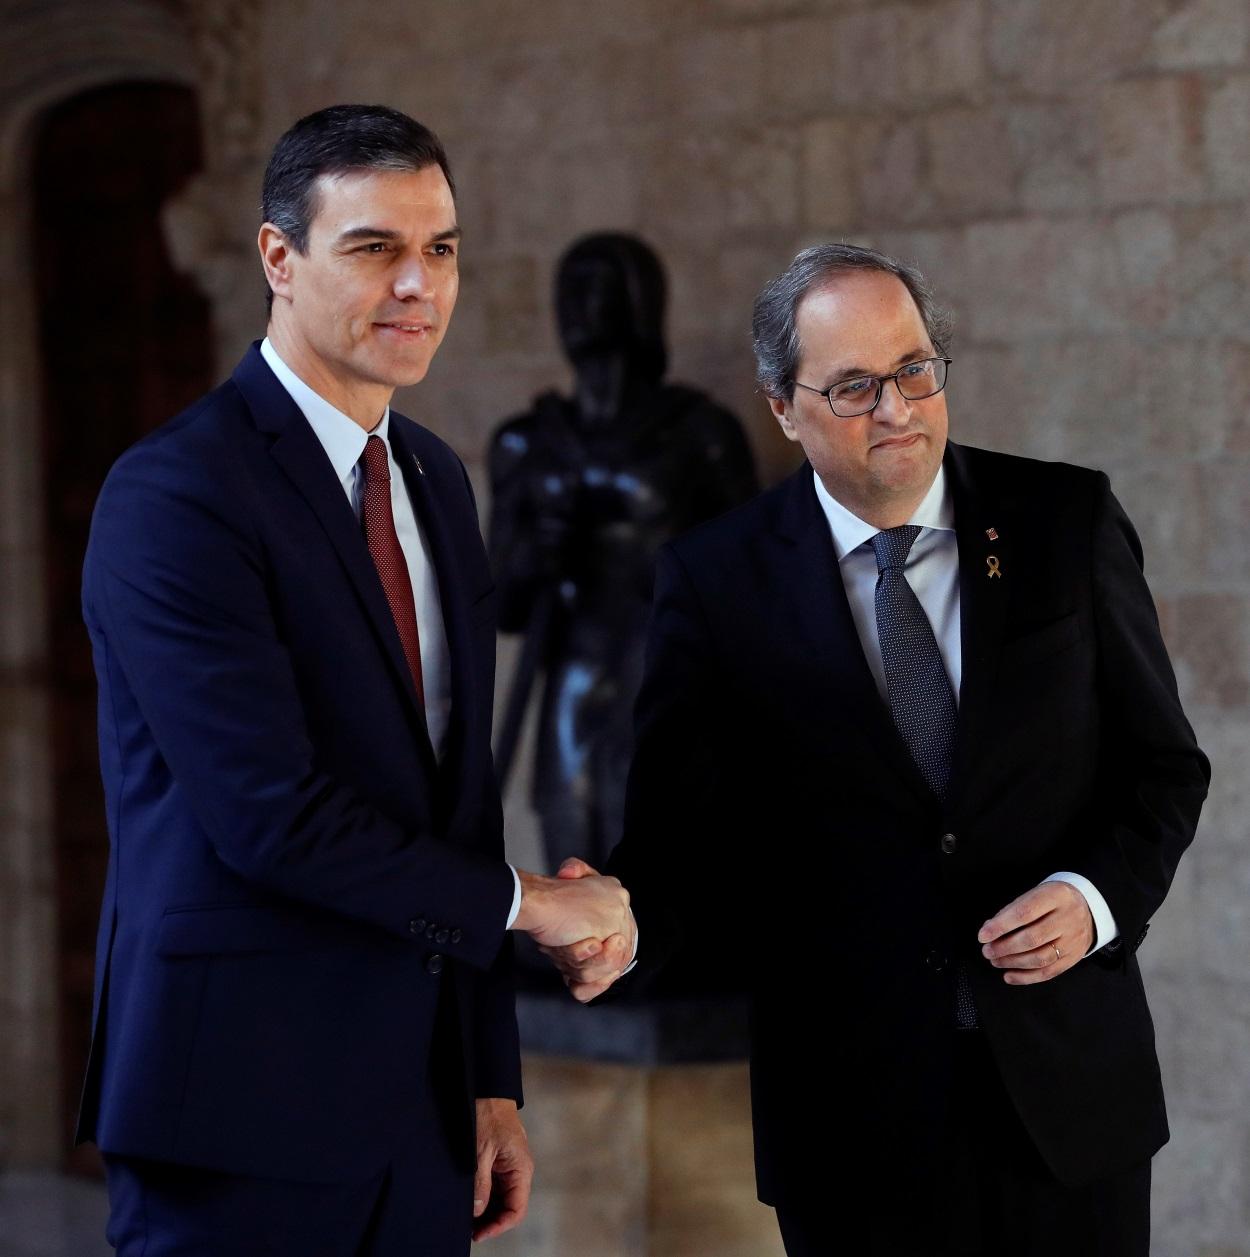 El presidente de la Generalitat, Quim Torra (dehc) y el presidente del Gobierno, Pedro Sánchez (izq), posan juntos en el Palau de la Generalitat